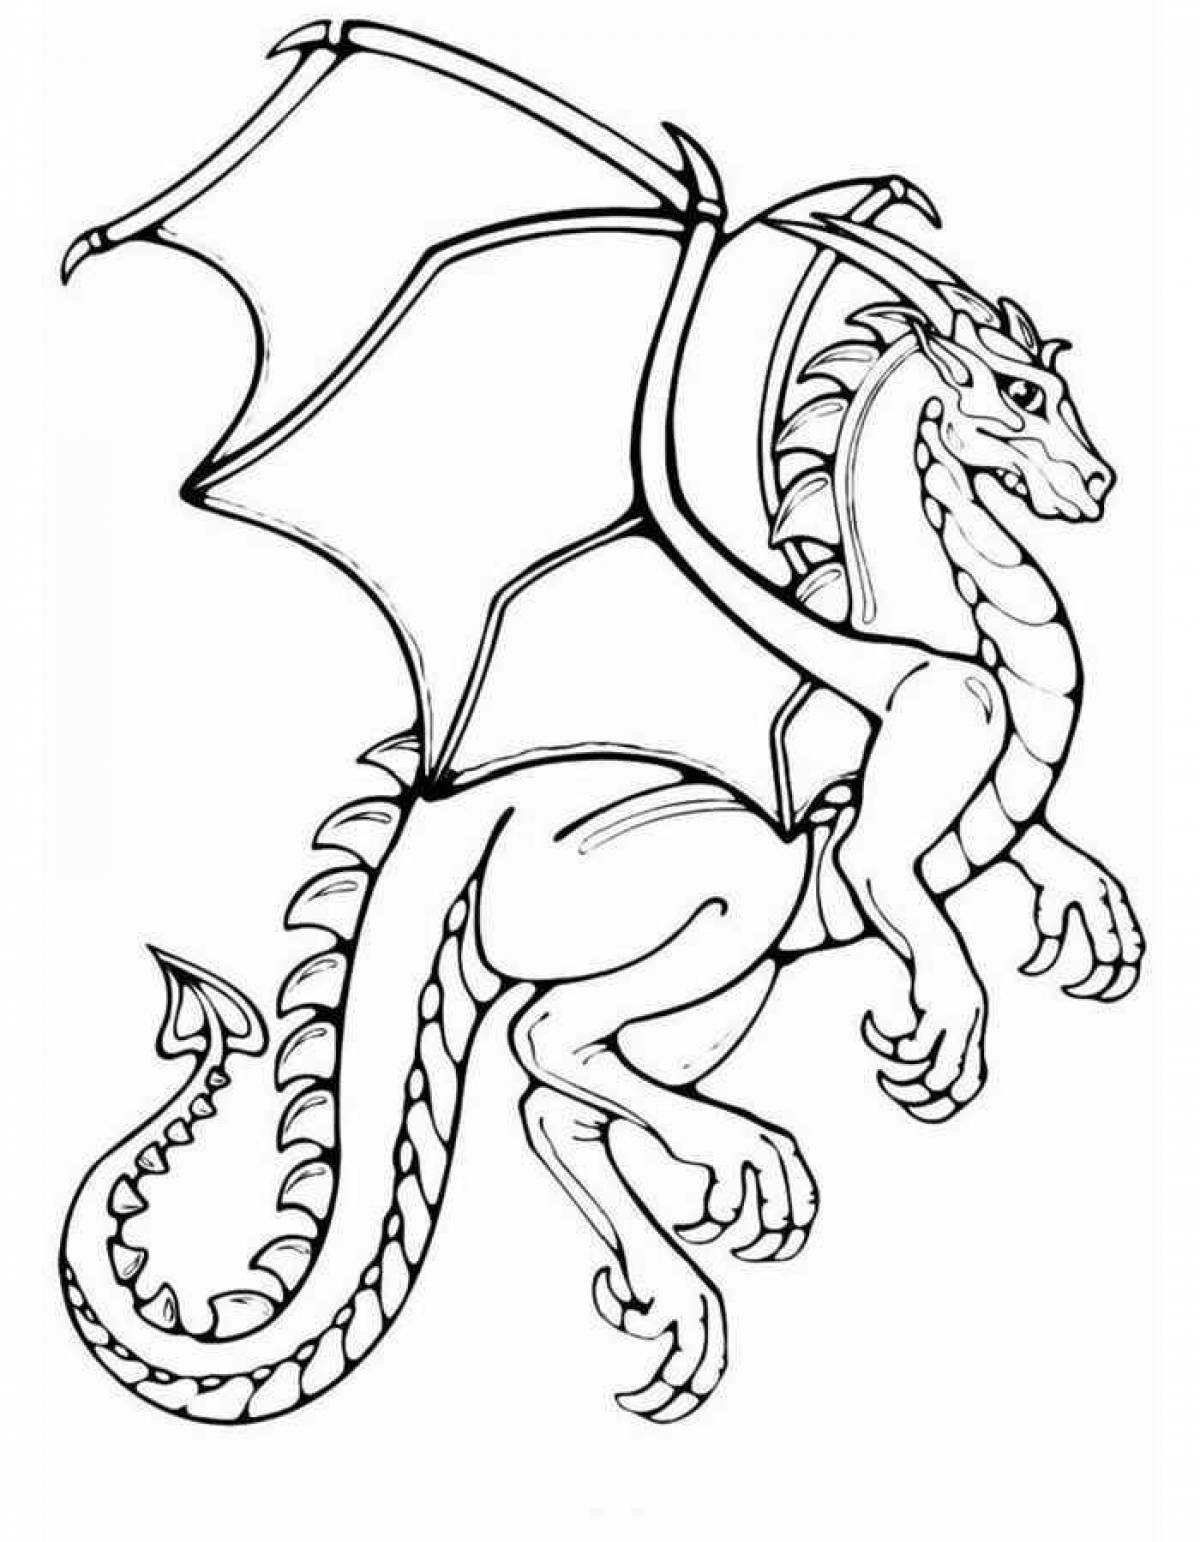 Страшная раскраска дракон для детей